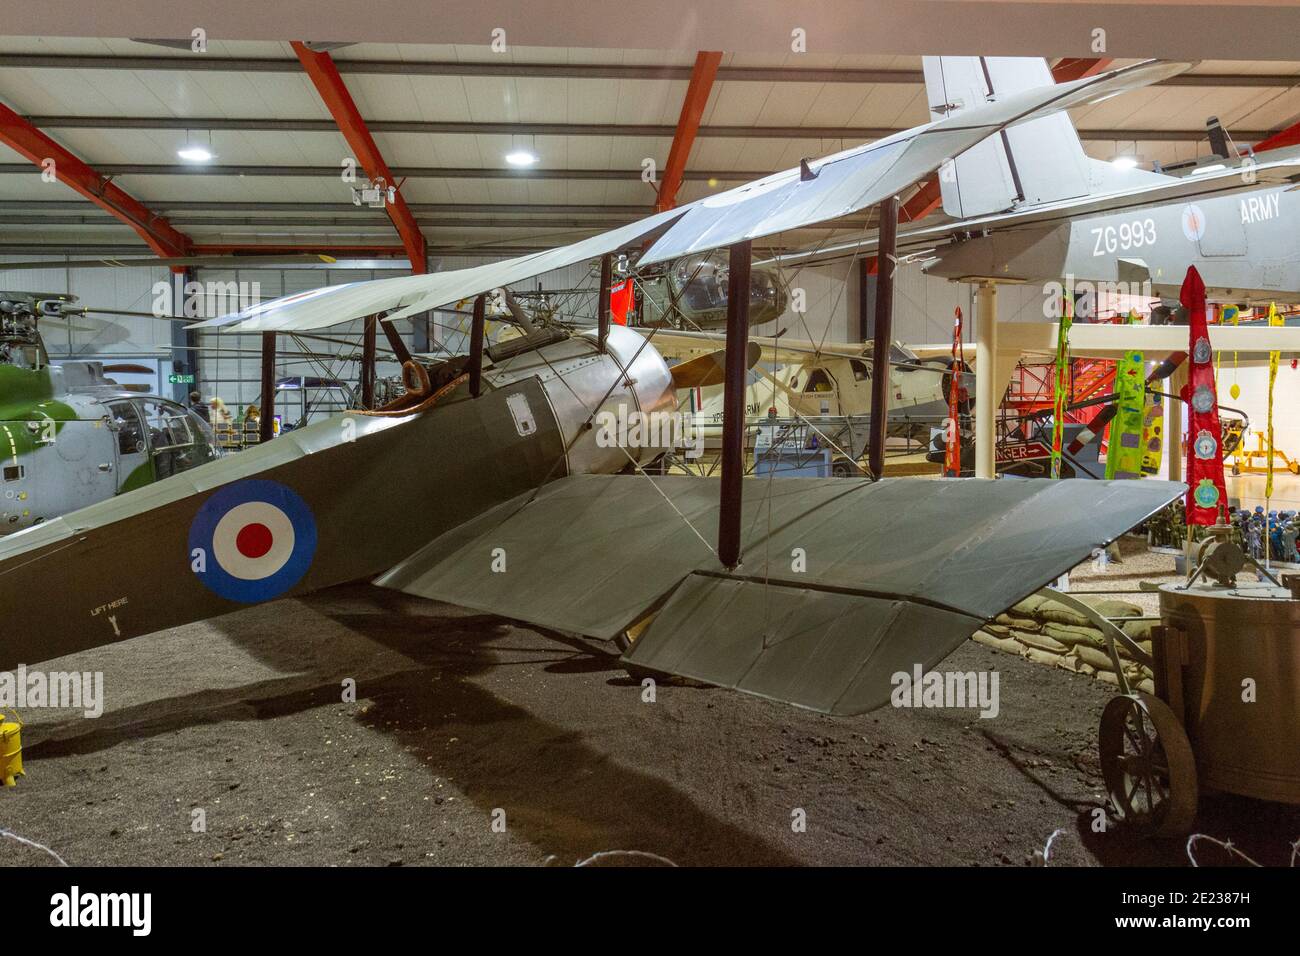 Ein Sopwith Pup Scout-Flugzeug, das im Army Flying Museum, einem Military Aviation Museum in Stockbridge, Hampshire, Großbritannien, ausgestellt ist. Stockfoto